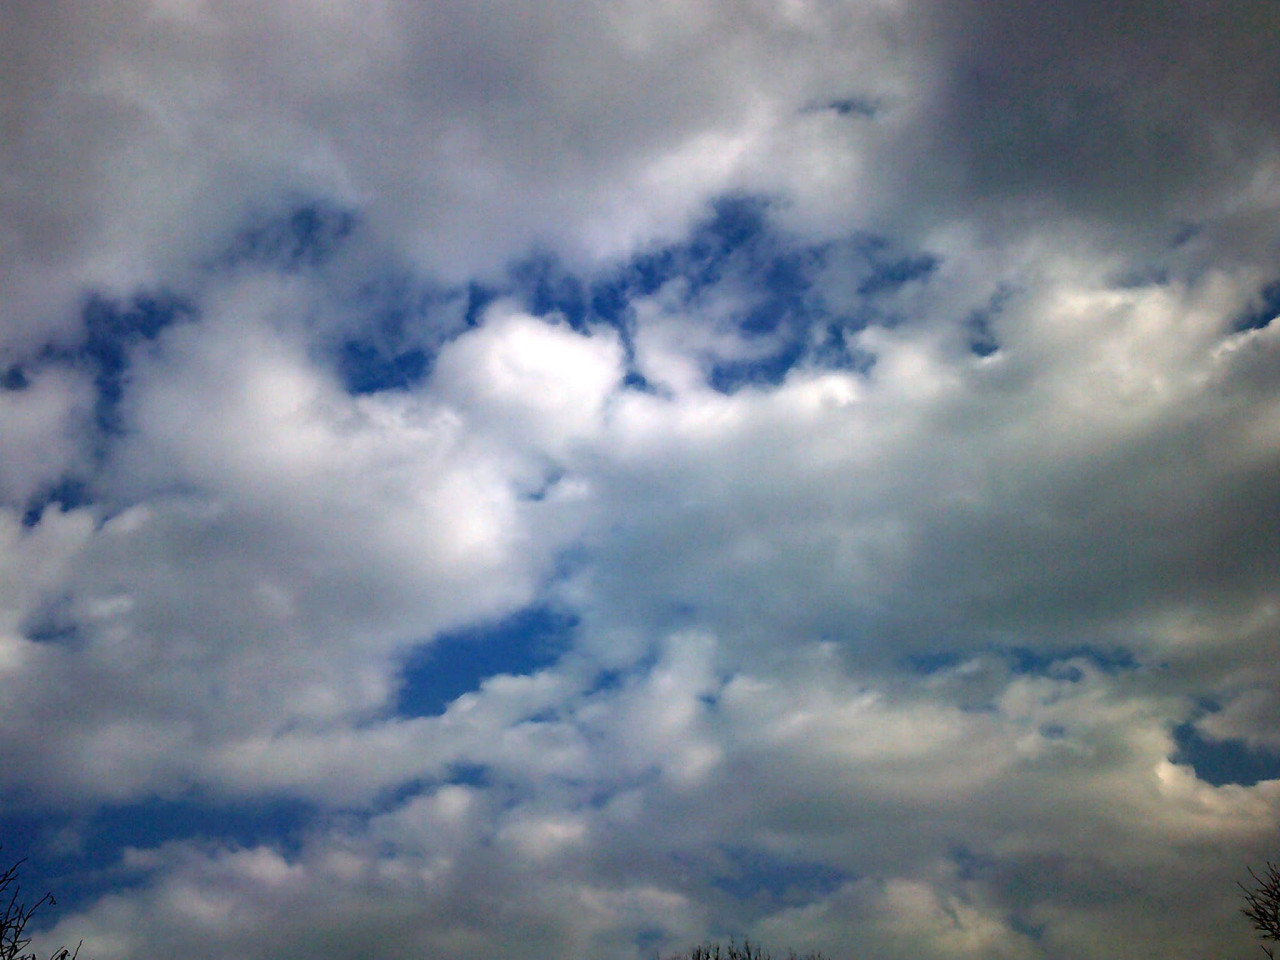 Meteo Trapani: domani venerdì 27 Ottobre prevalentemente nuvoloso per velature.